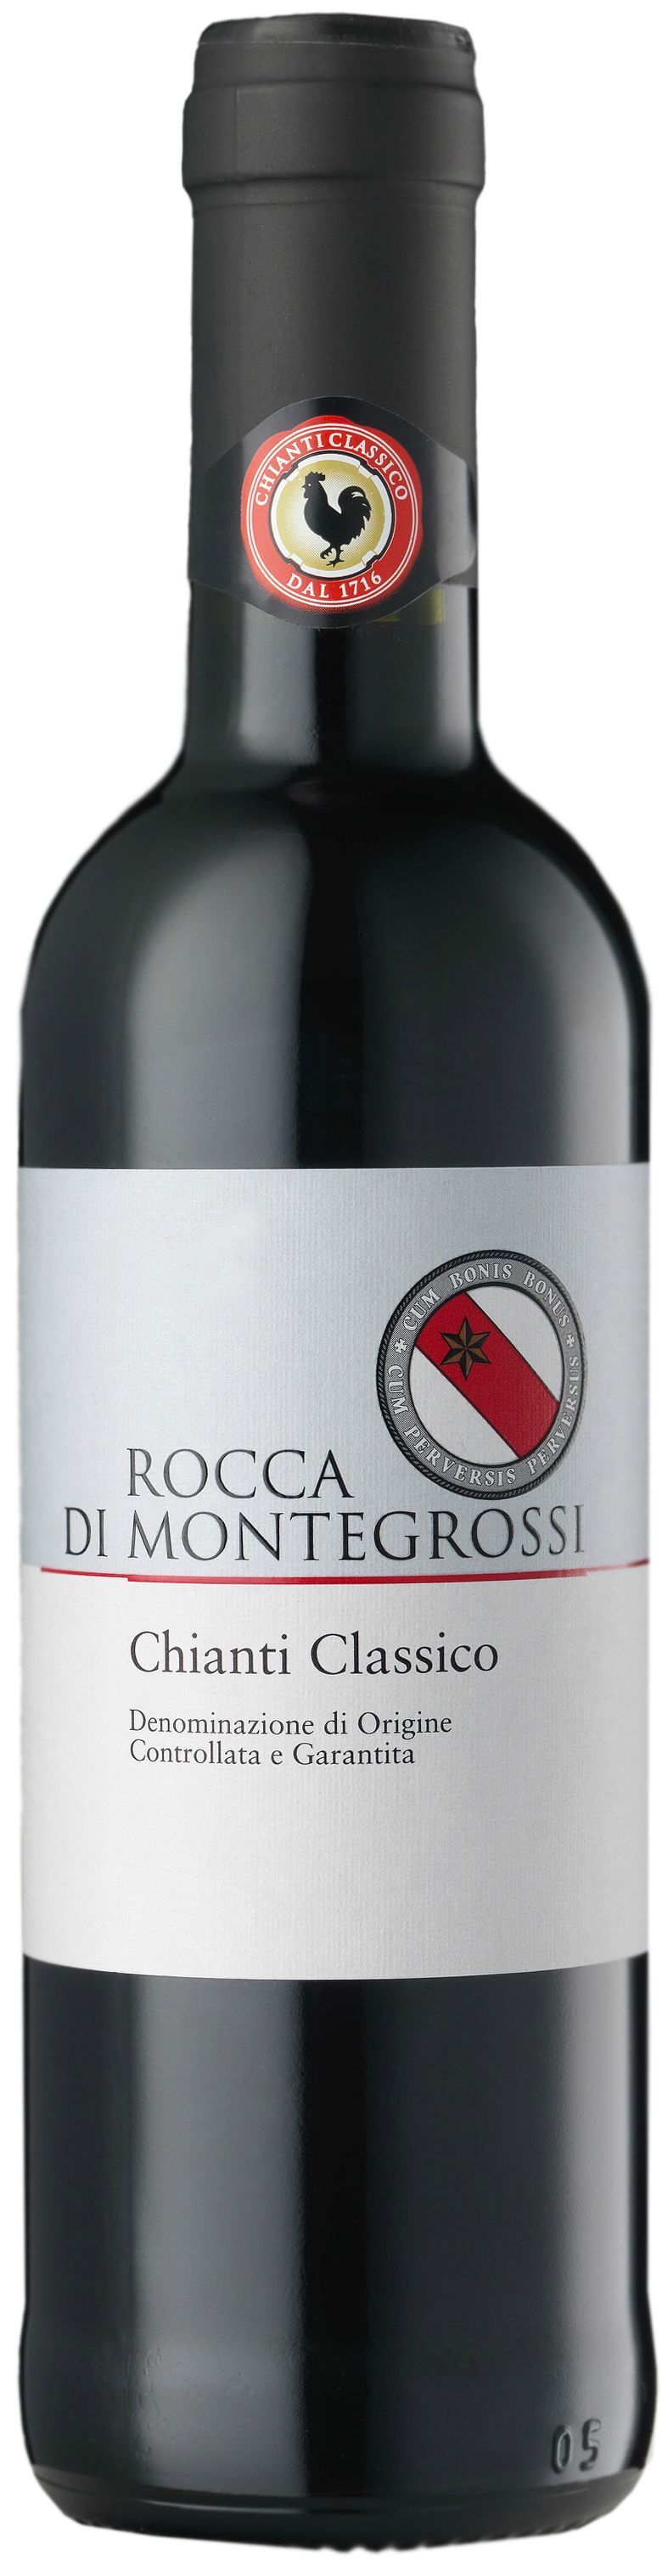 Rocca Di Montegrossi, Chianti Classico, 2012